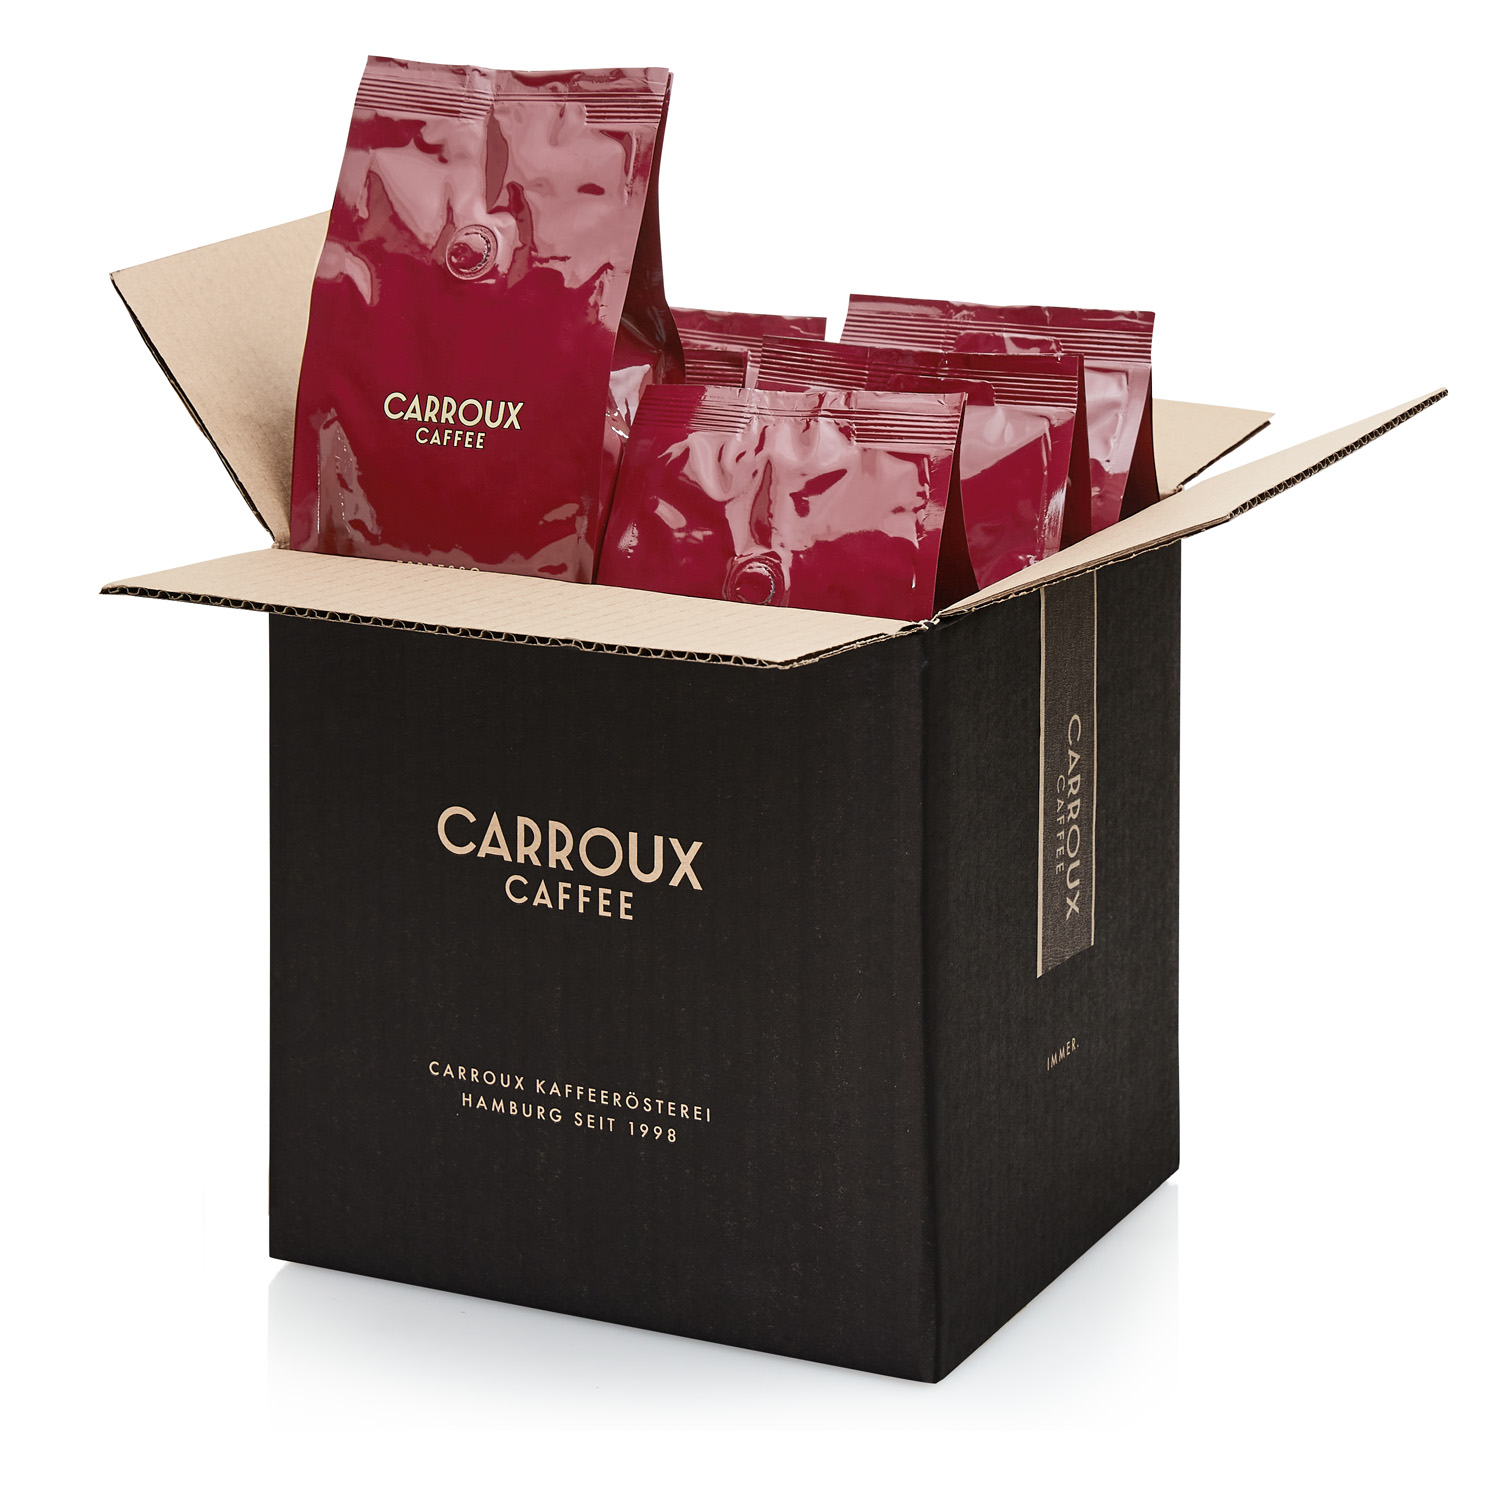 Carroux caffee - Die preiswertesten Carroux caffee verglichen